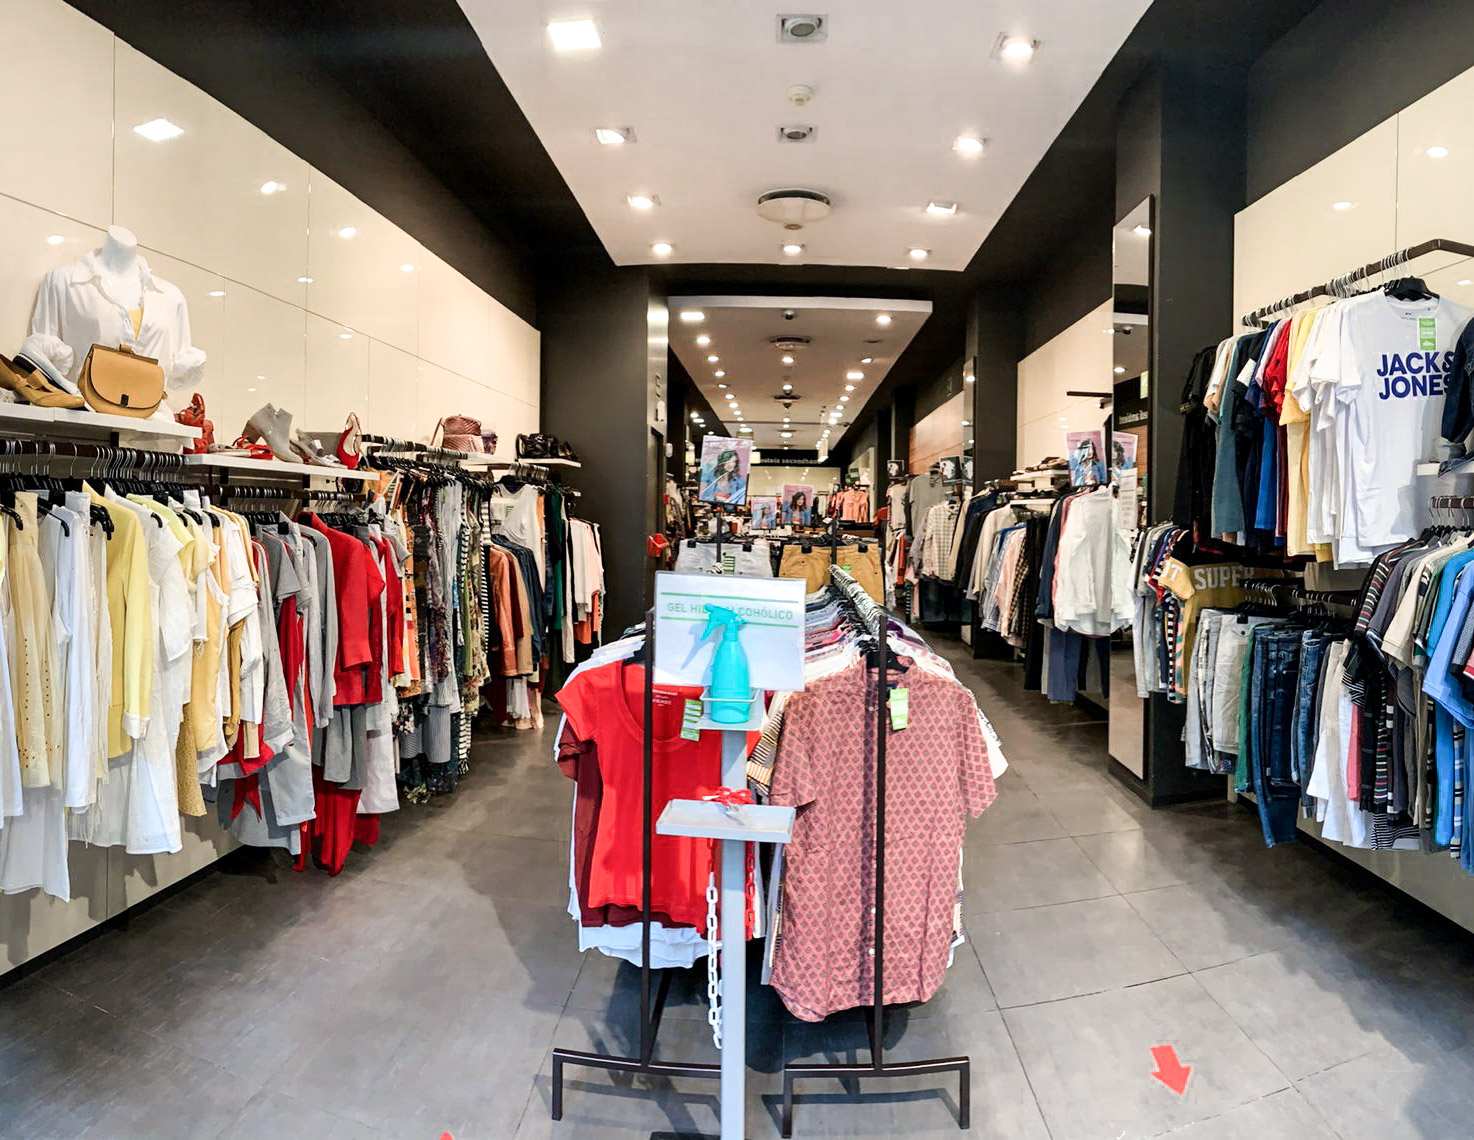 Estrenar ropa ya no está de moda: la compra de segunda mano aumenta el 38% en España los últimos años | Eco-Circular.com: Noticias de economía circular